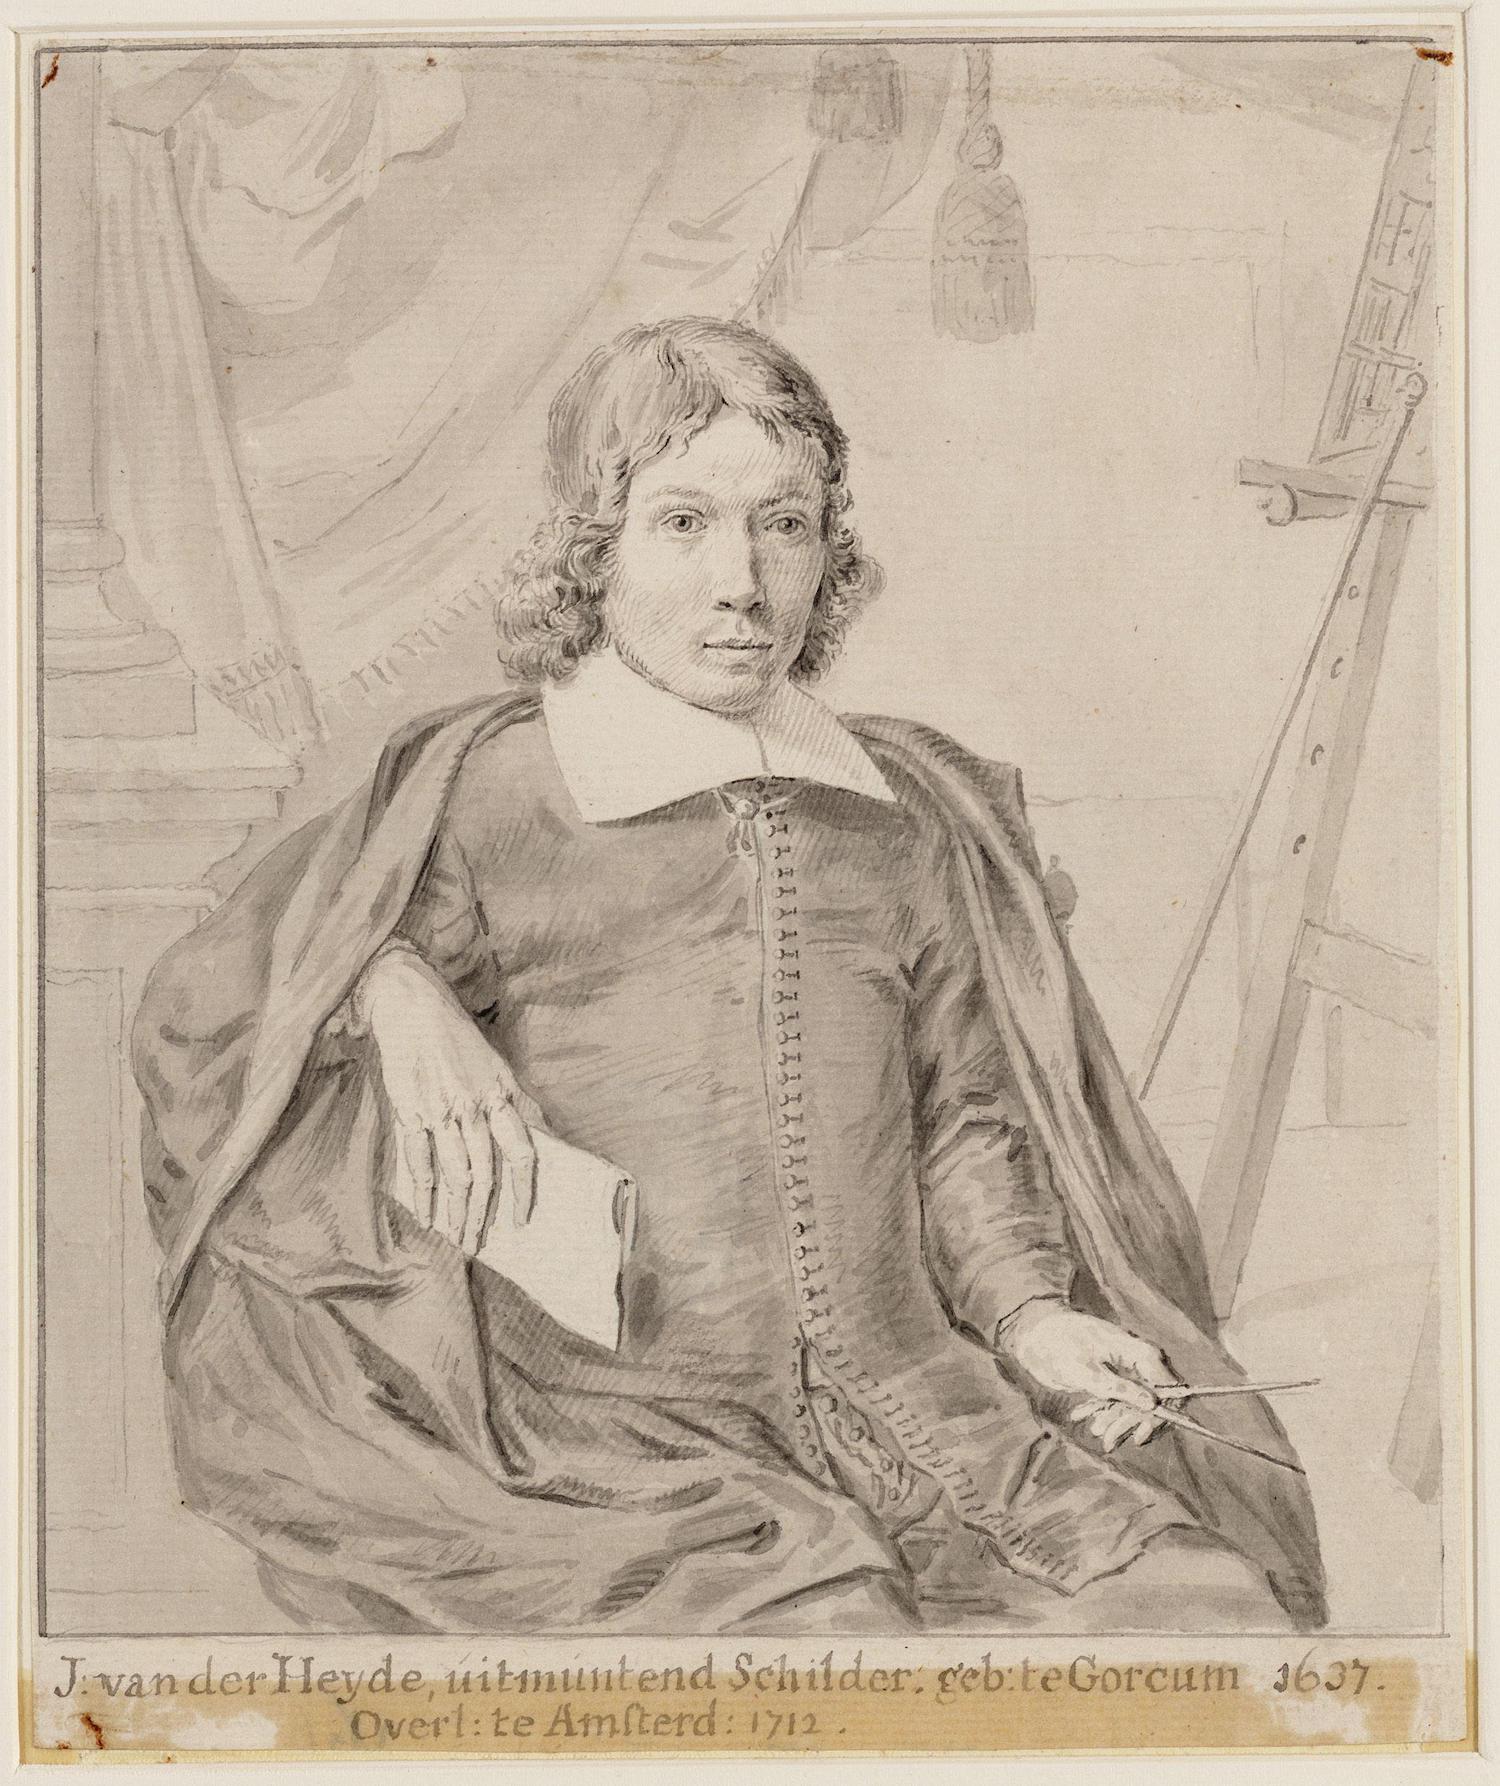 Jan van der Heyden - 5 Mart 1637 - 28 Mart 1712